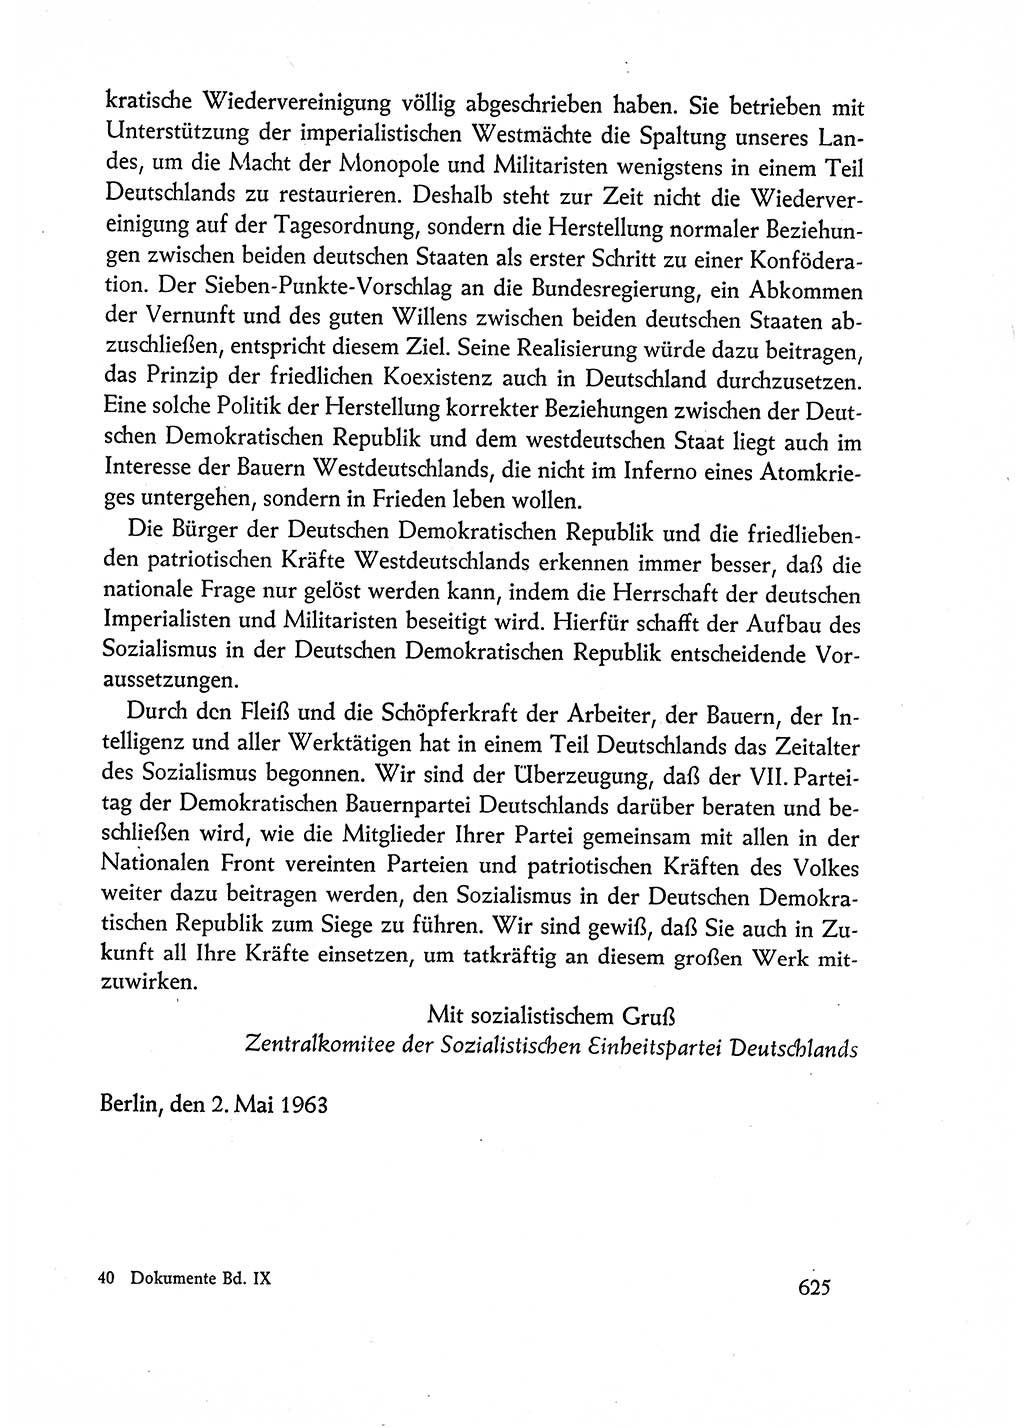 Dokumente der Sozialistischen Einheitspartei Deutschlands (SED) [Deutsche Demokratische Republik (DDR)] 1962-1963, Seite 625 (Dok. SED DDR 1962-1963, S. 625)